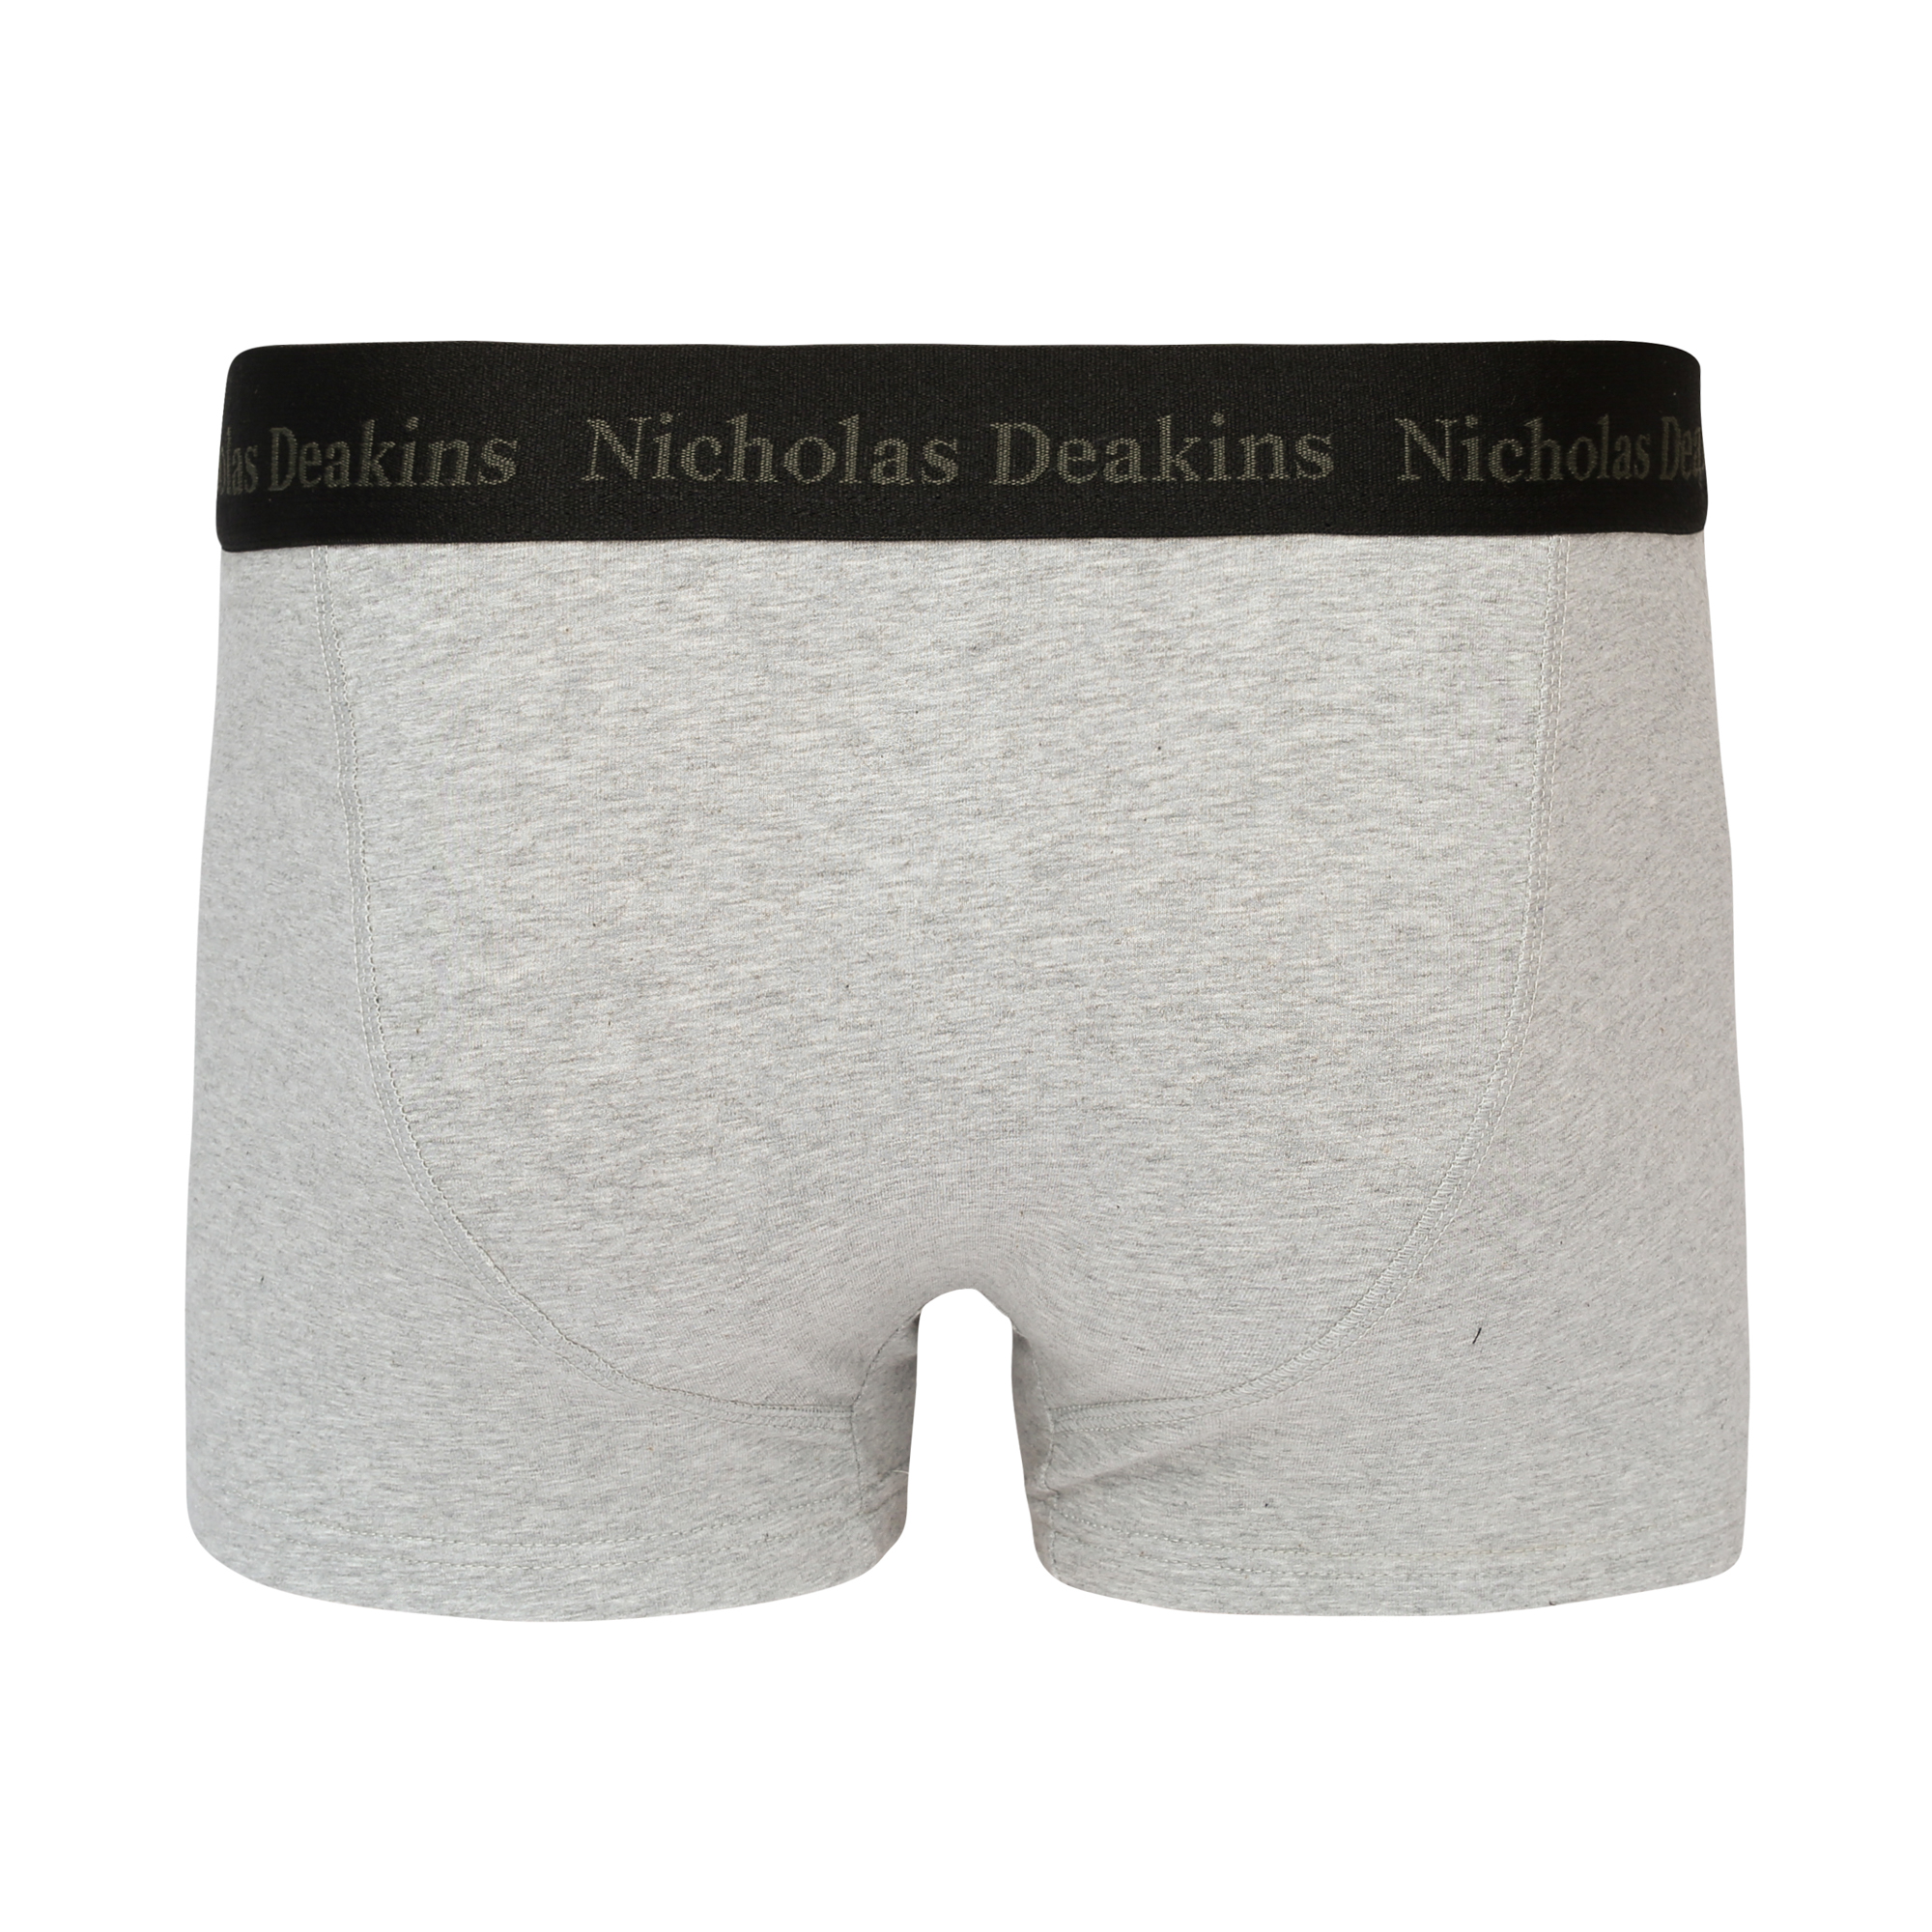 ND Boxers -SELLING FAST – Nicholas Deakins